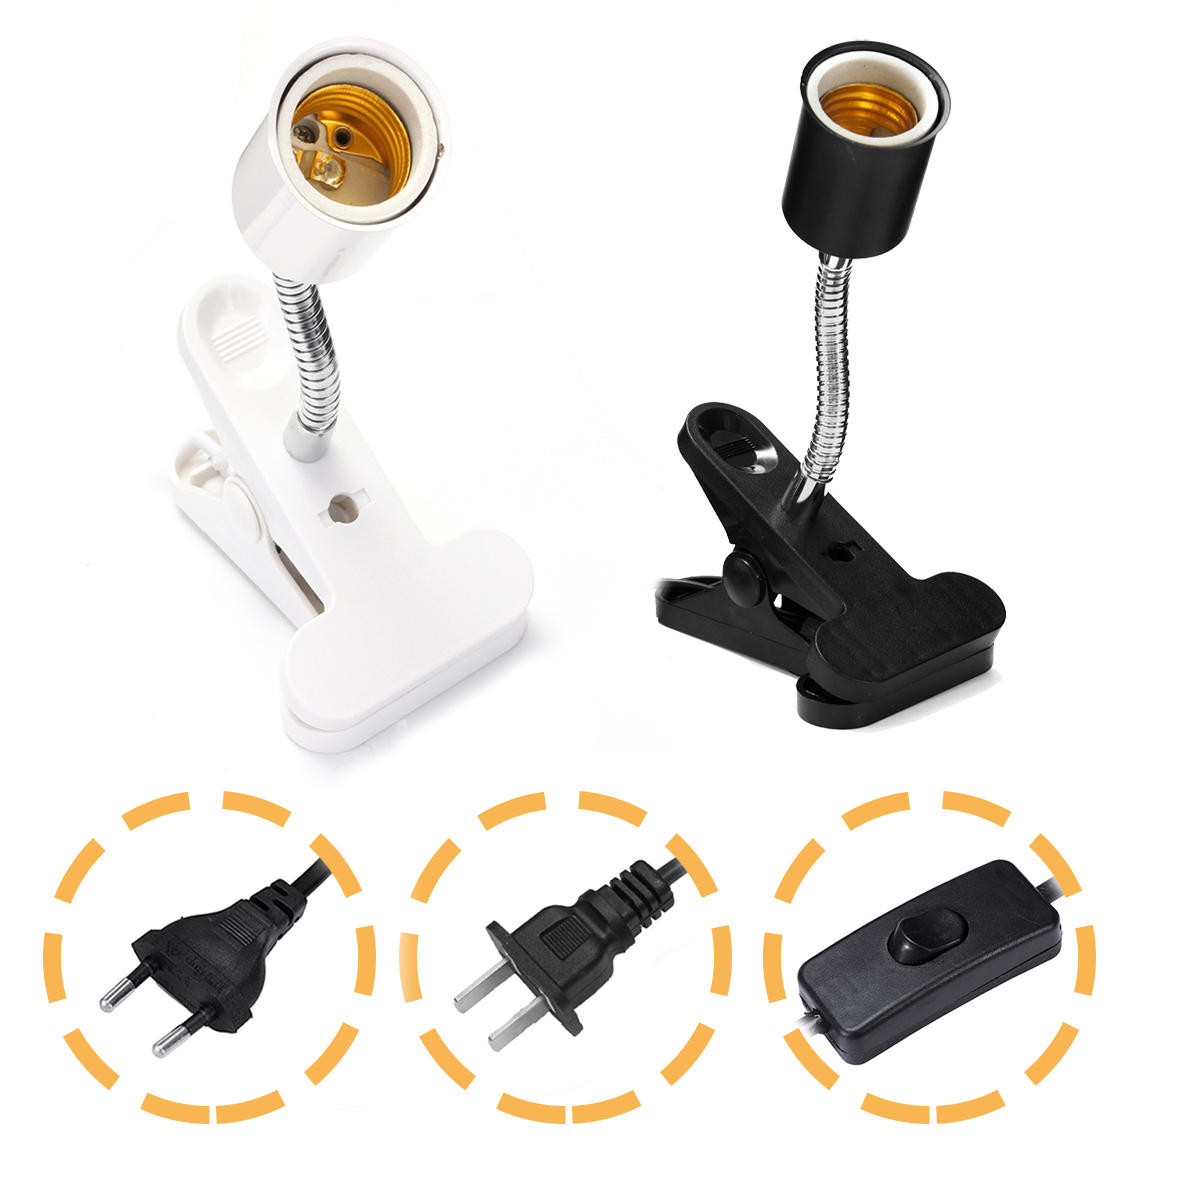 20 CM E27 Flexibele Pet LED Light Lamp Adapter Houder Socket met Clip Op Off Schakelaar EU US Plug